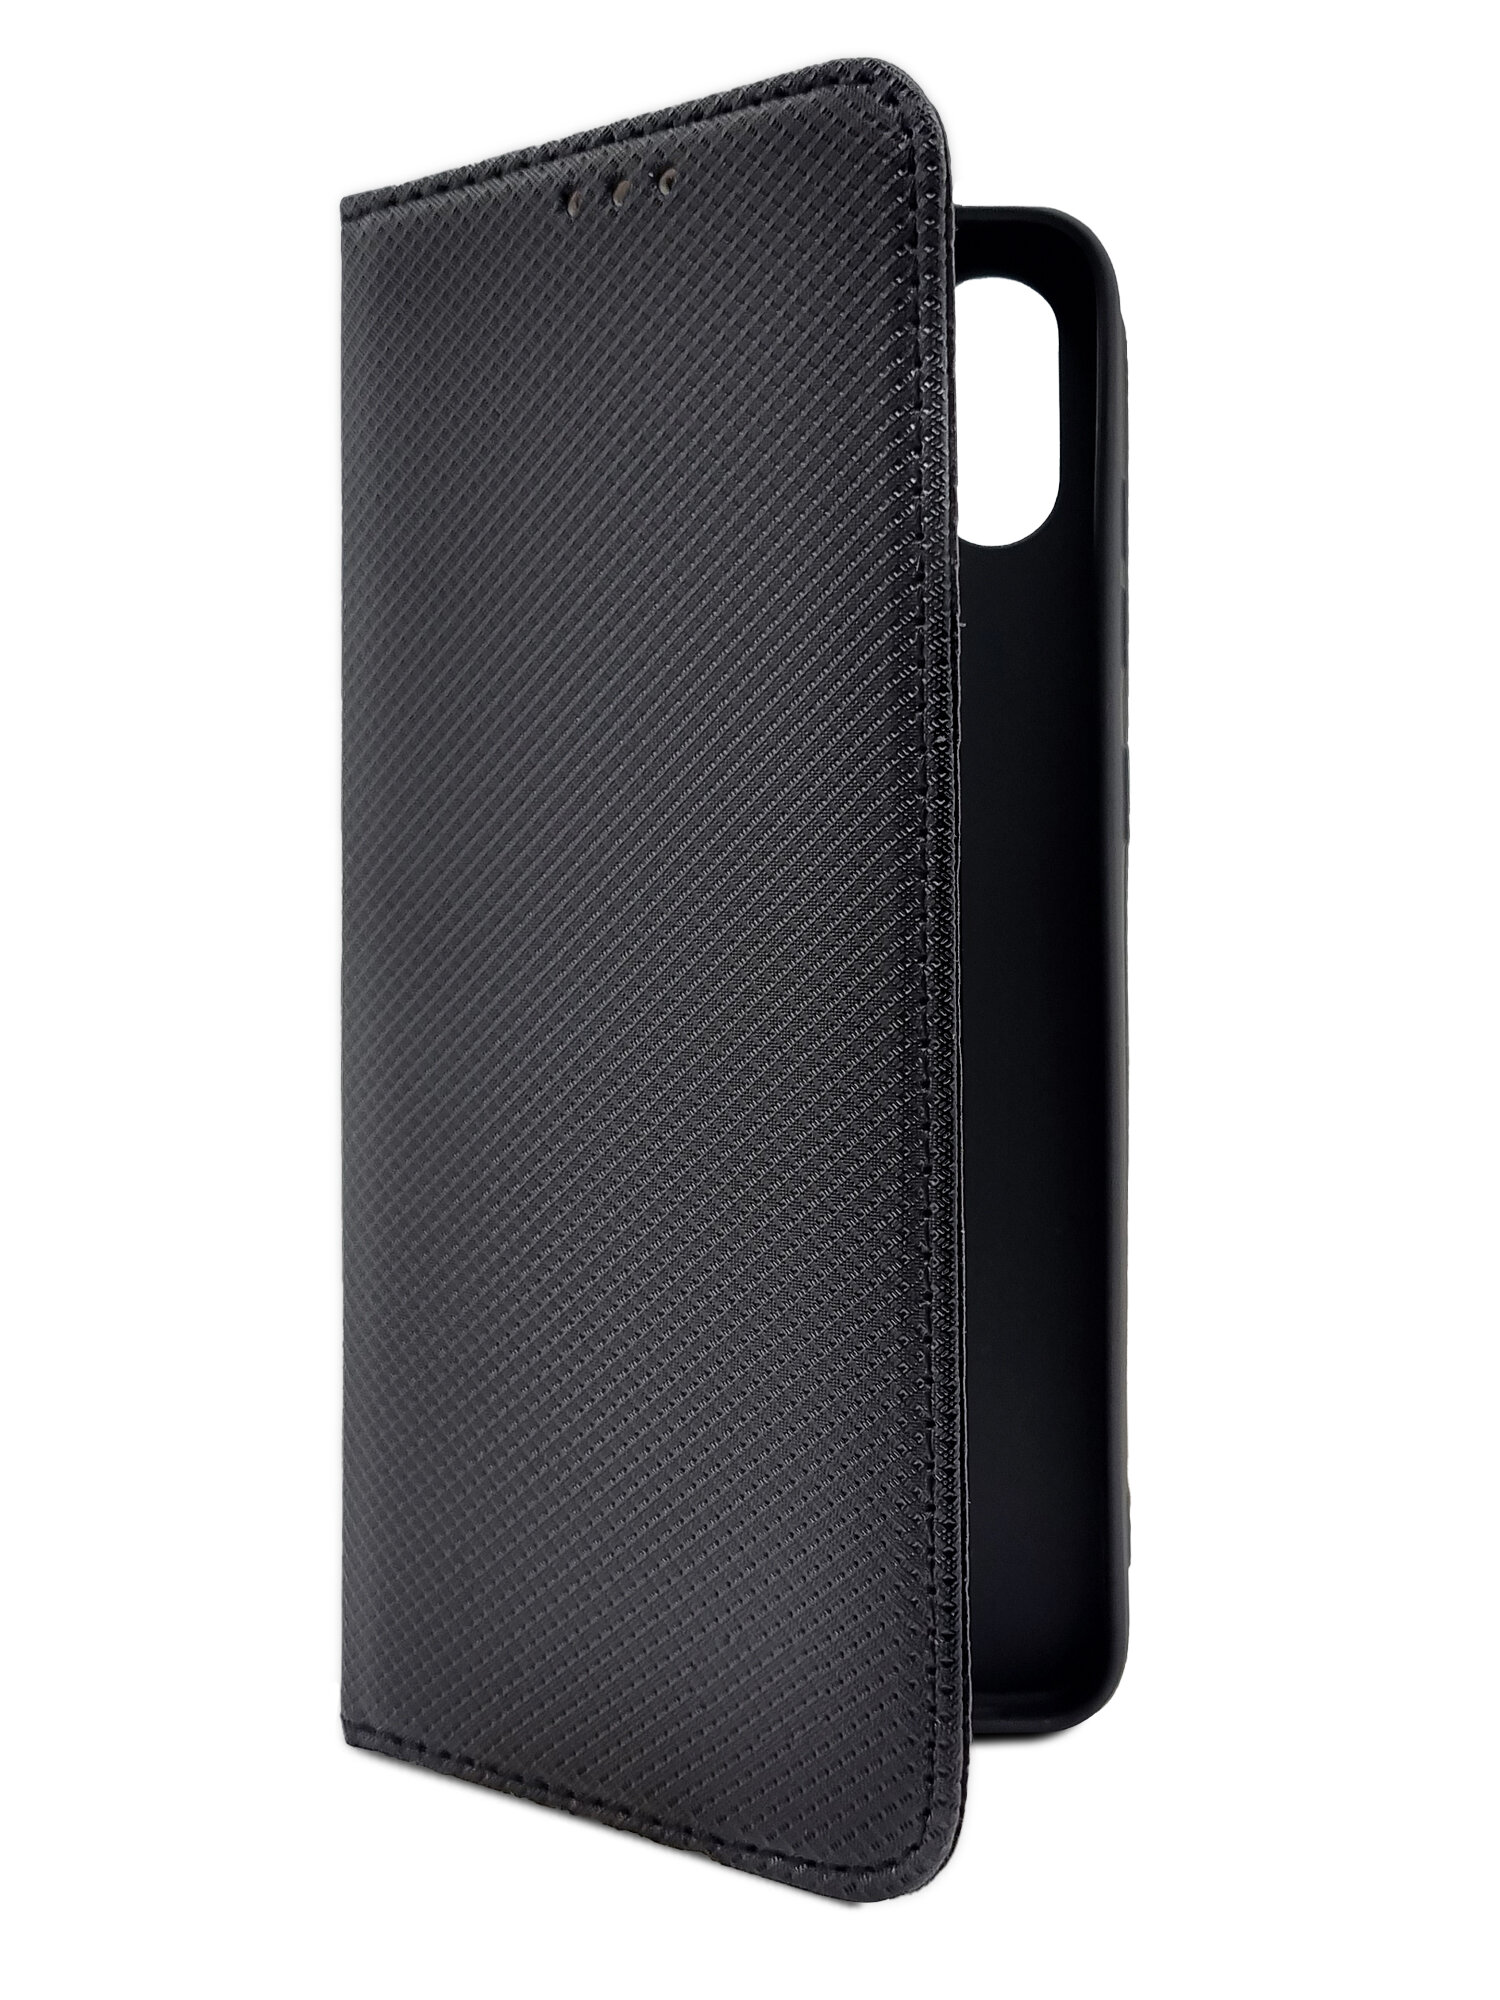 Чехол на Samsung Galaxy A05 (Самсунг Галакси А05) черный книжка экокожа с функцией подставки отделением для карт и магнитами Book case плетенка Brozo